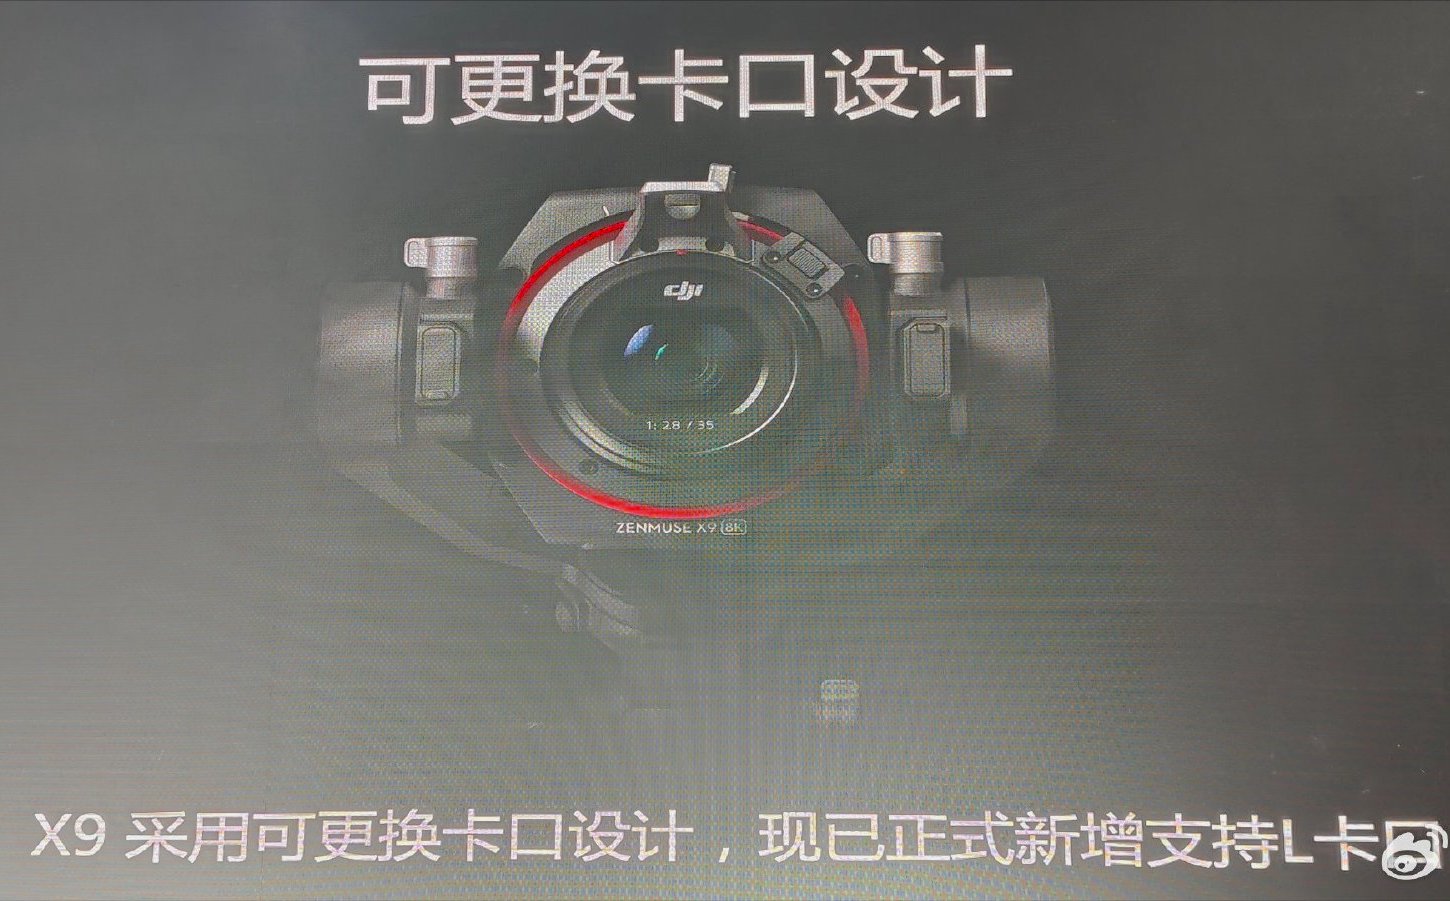 Камера DJI X9 поддерживает оптику с байонетом L-Mount